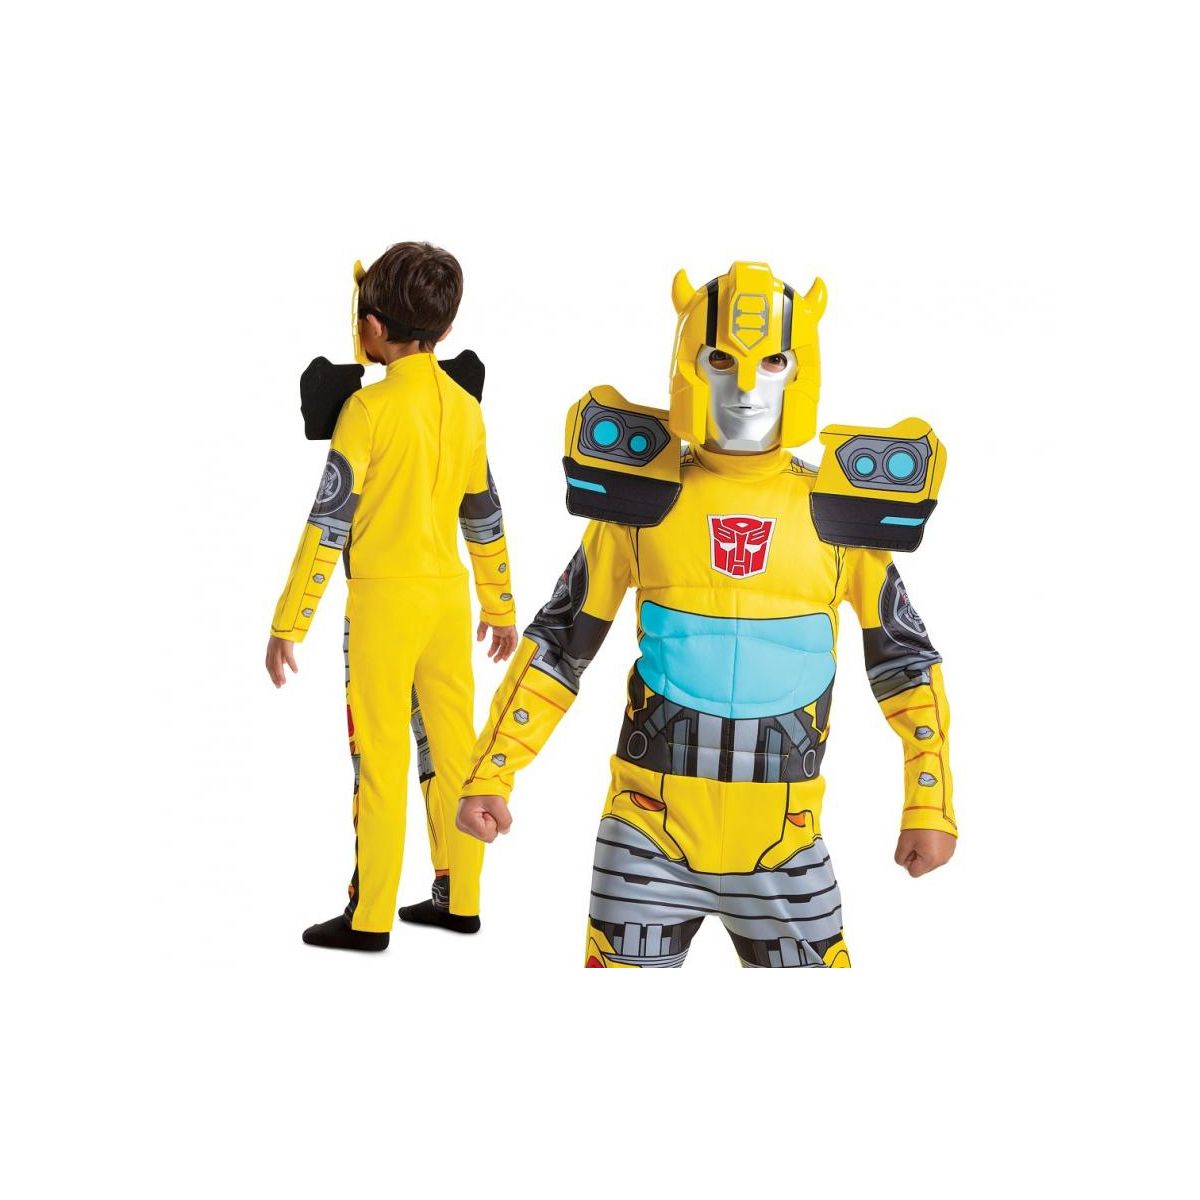 Kostium Bumblebee Fancy - Transformers (licencja), rozm. M (7-8 lat) Godan (116319K)